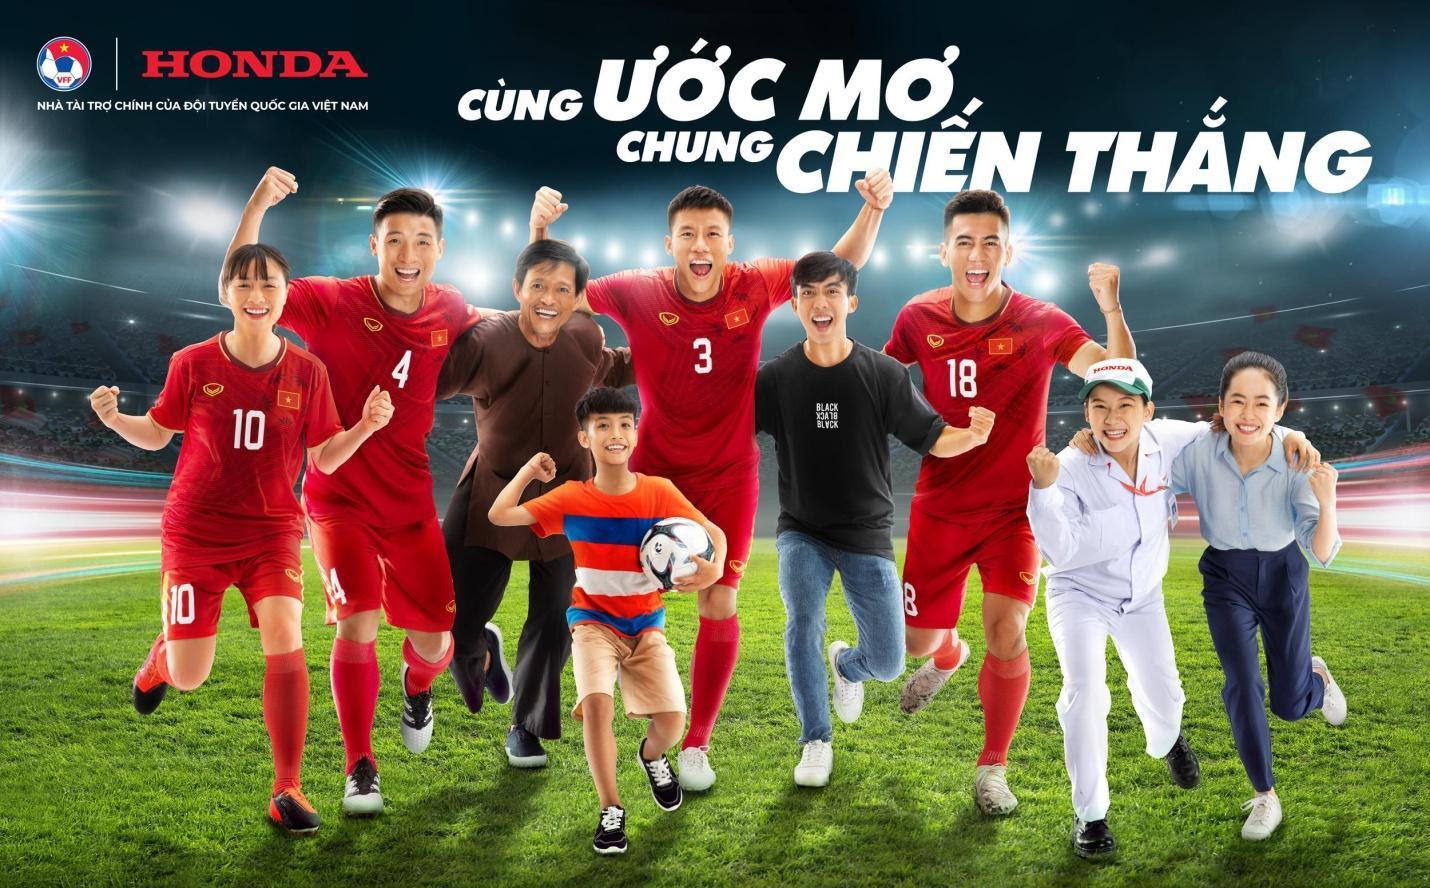 Honda Việt Nam tiếp tục trở thành Nhà tài trợ cho các đội tuyển bóng đá Quốc gia Việt Nam